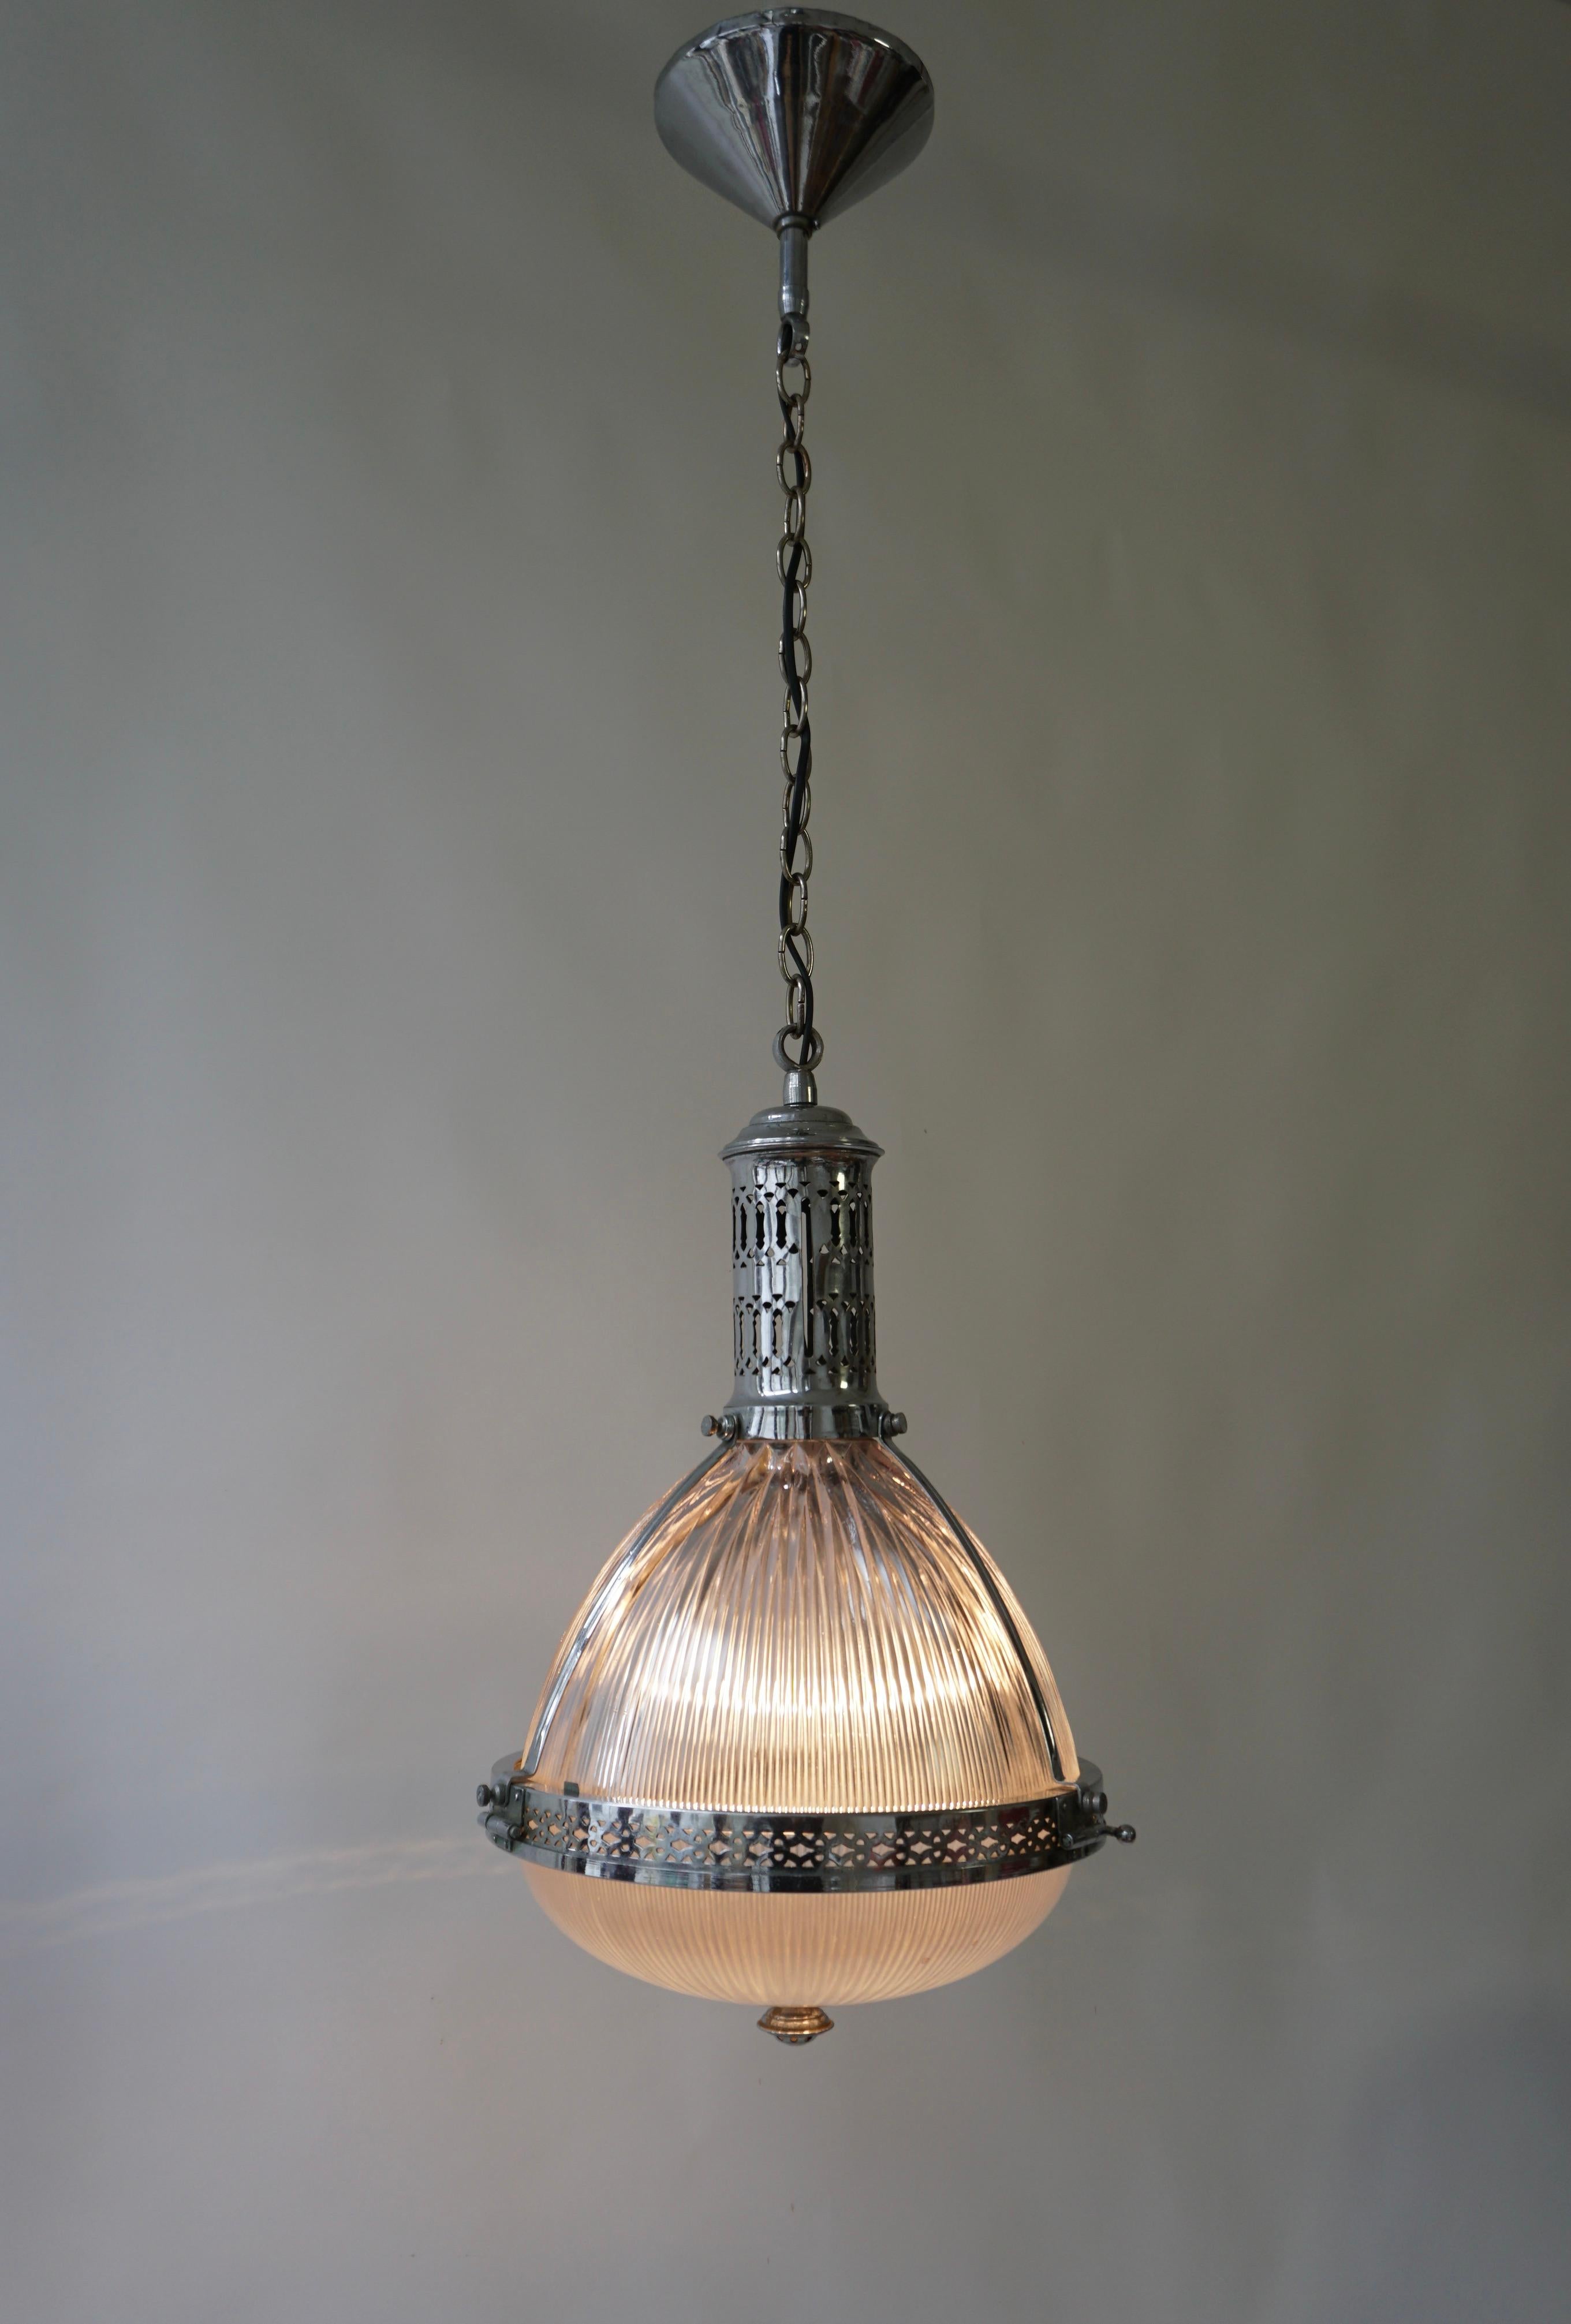 Lampe suspendue magnifiquement formée, fabriquée en Angleterre par Holophane. C.C..

La lampe dispose d'une douille pour les lampes à incandescence à culot à vis ou les LED de type E27. Il est possible d'installer ce luminaire dans tous les pays